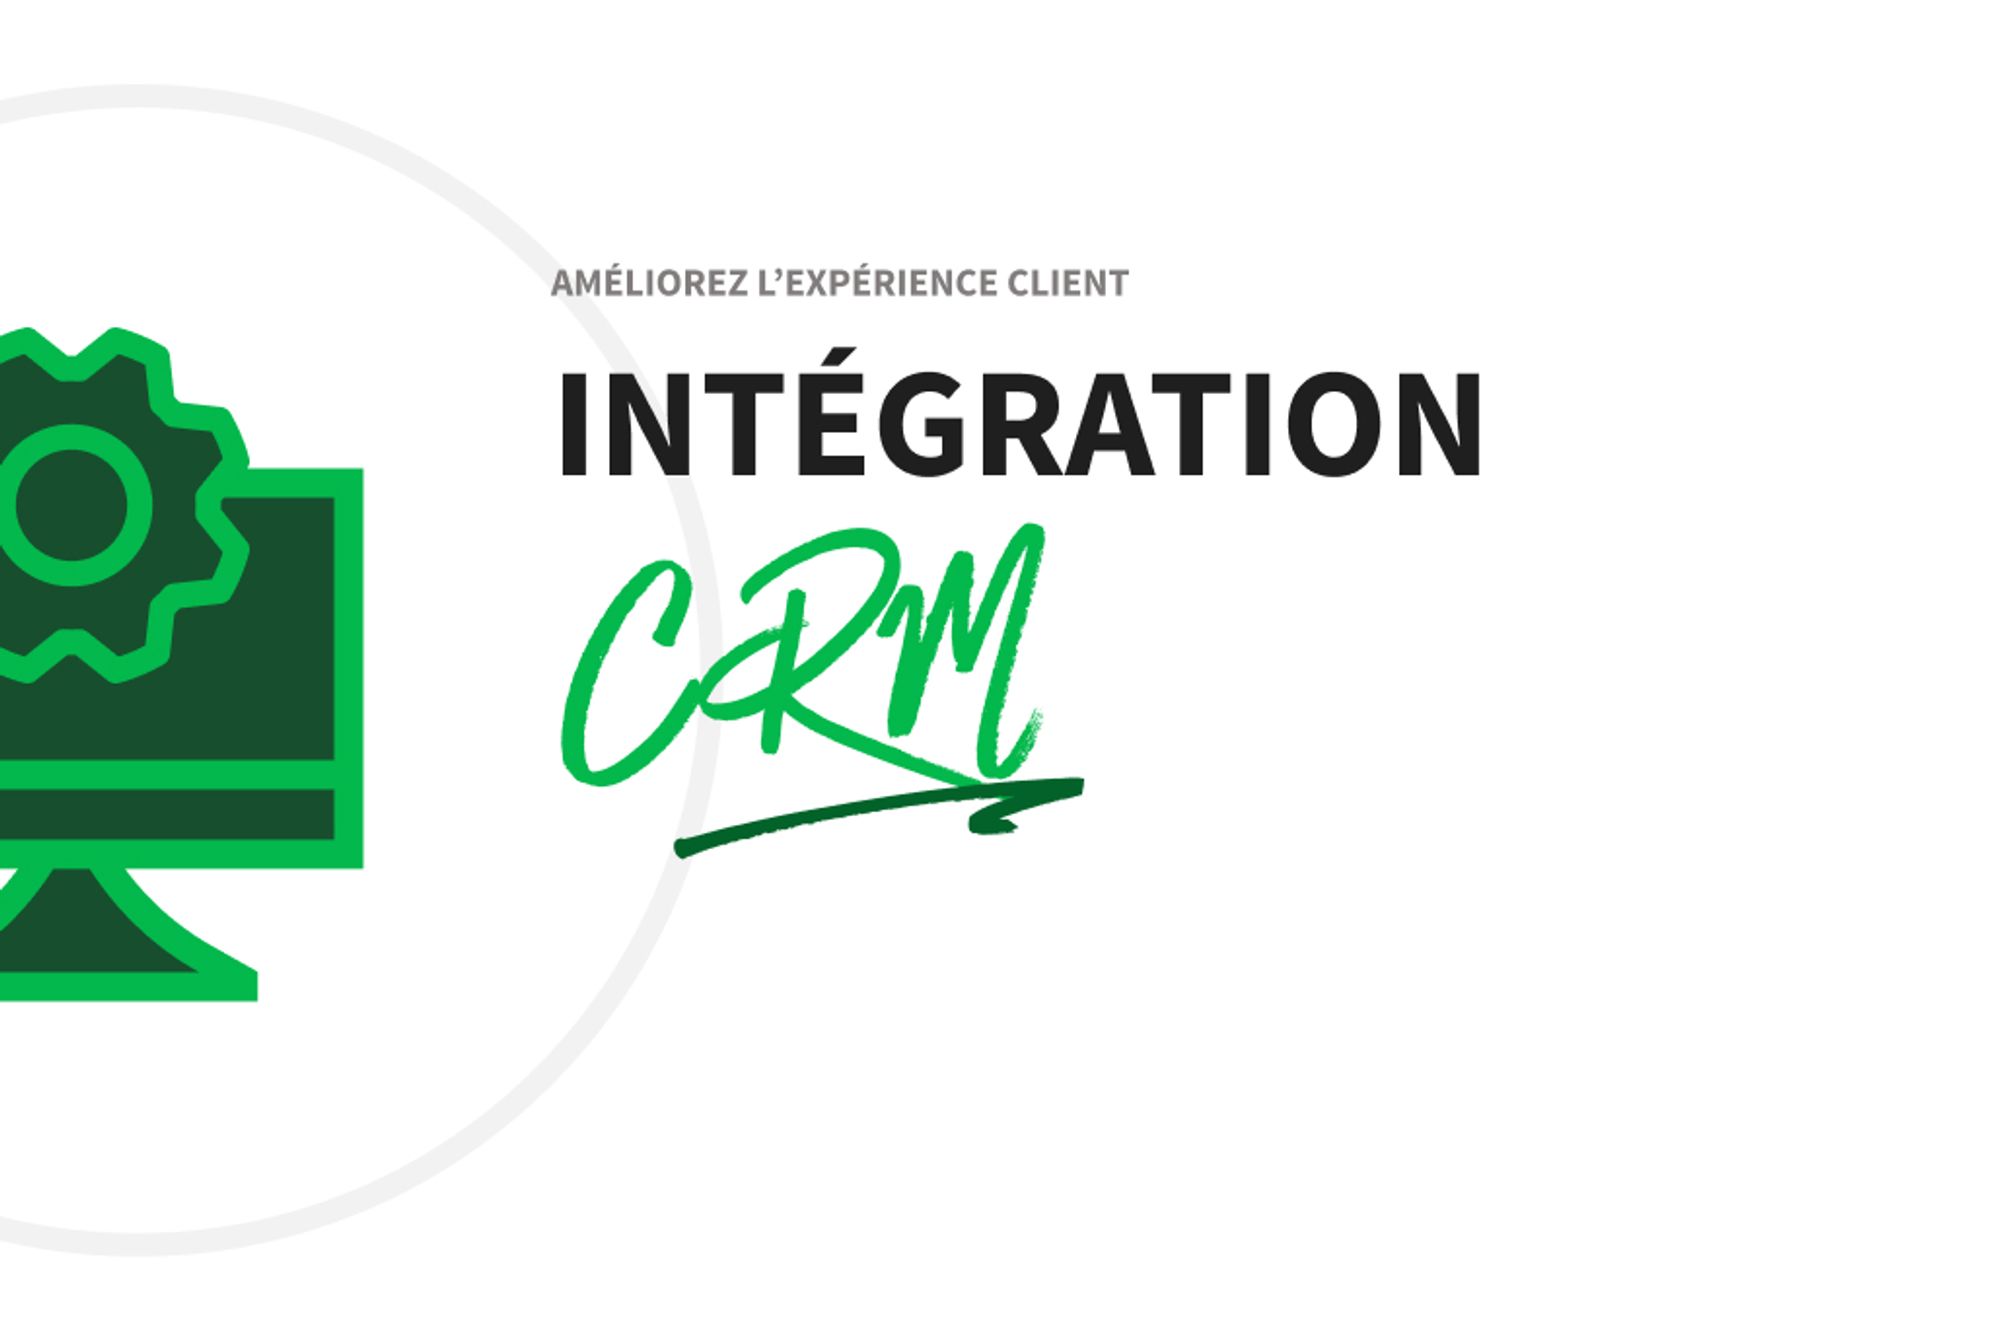 Améliorez l’expérience client avec une bonne intégration CRM